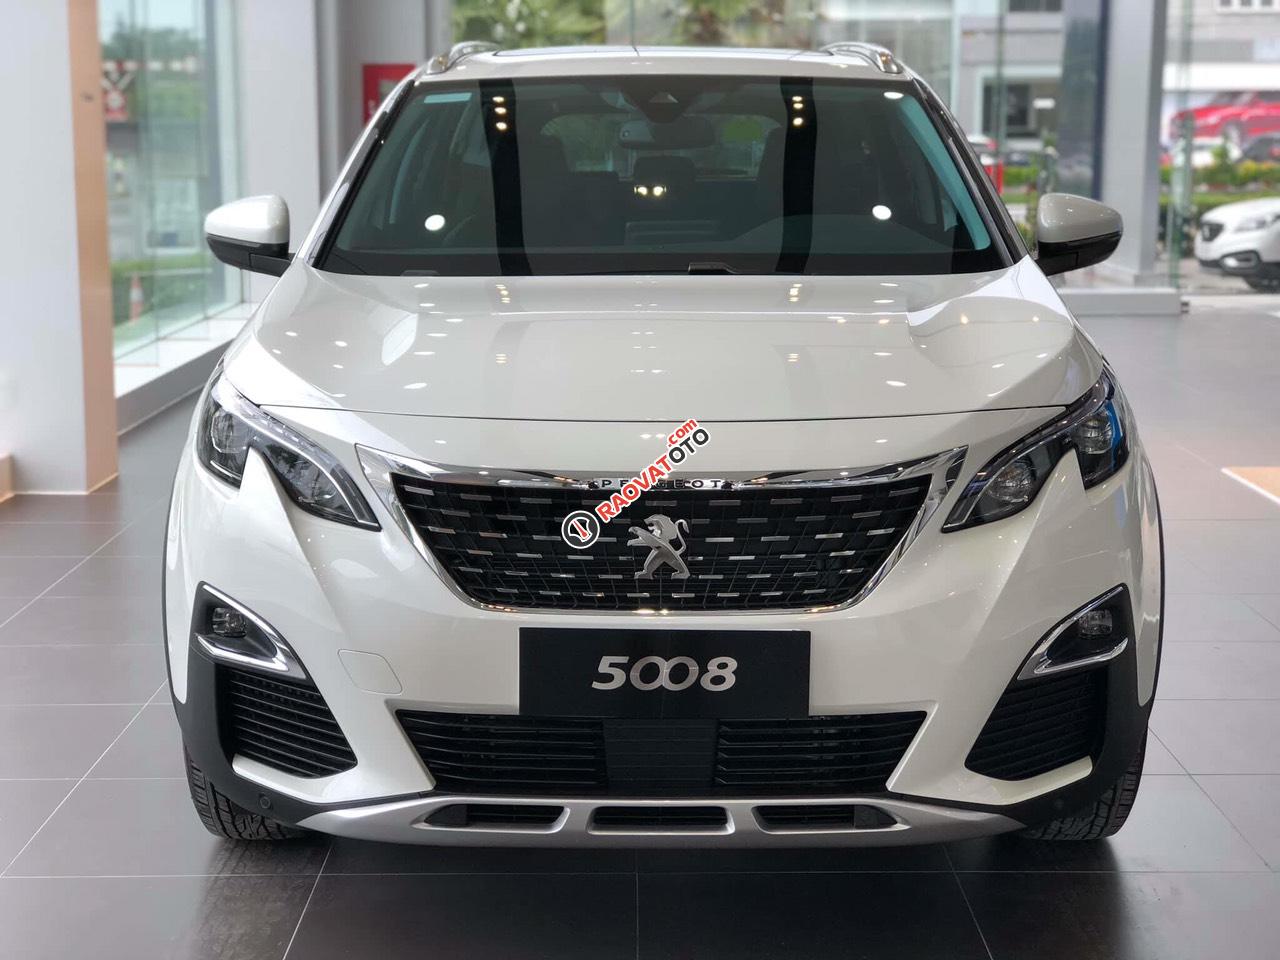 Cần bán xe Peugeot 5008 1.6AT đời 2019 new 100%, màu trắng, giá chỉ 1 tỷ 349 triệu đồng-4